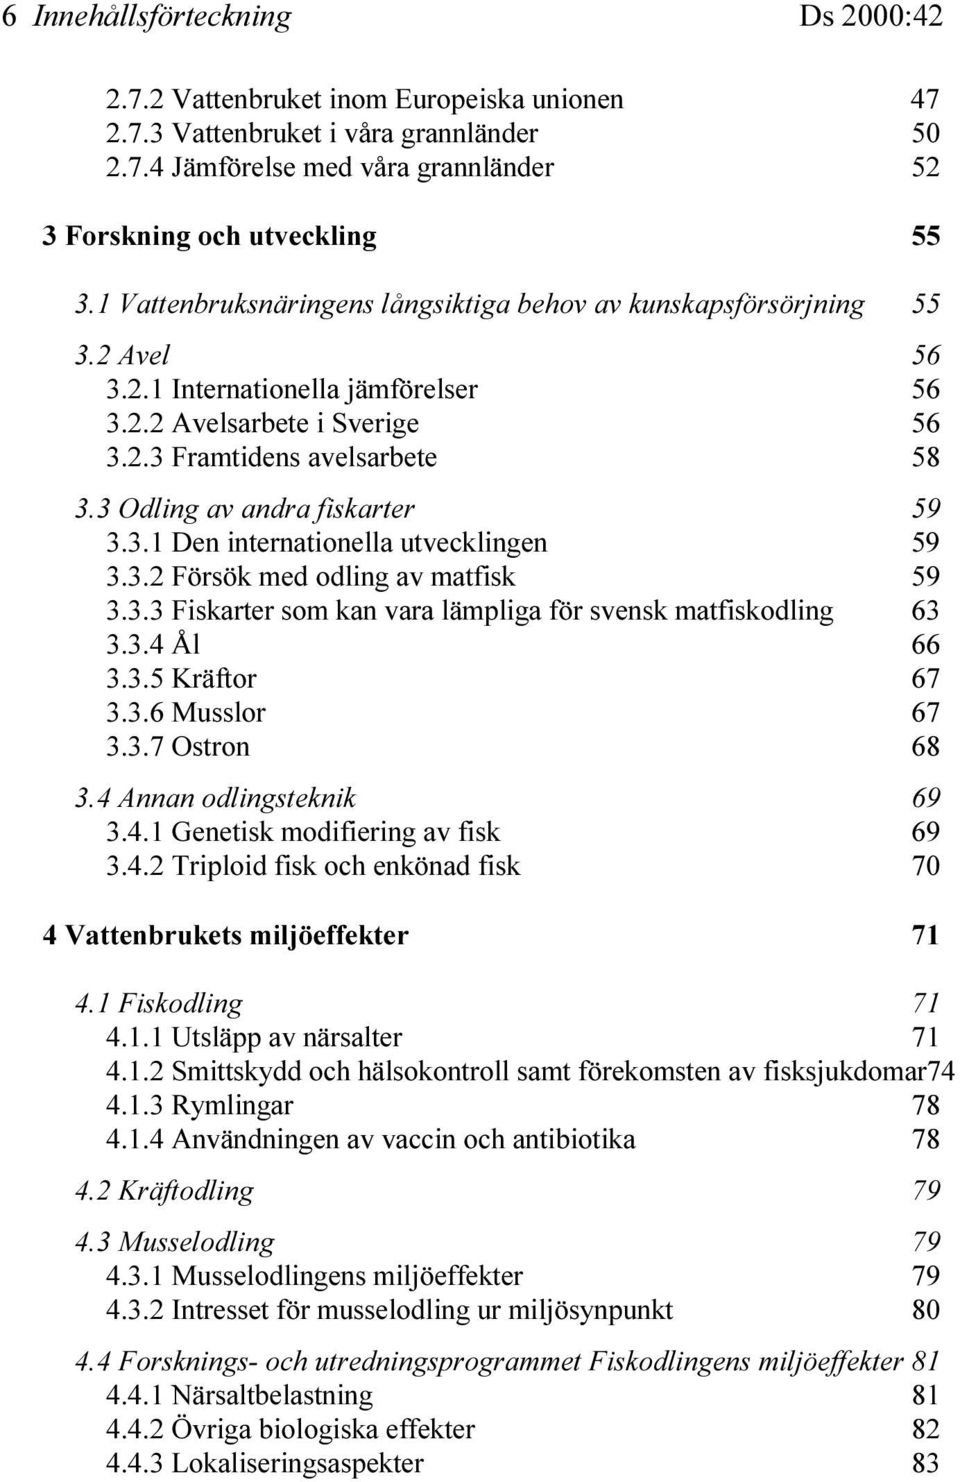 3 Odling av andra fiskarter 59 3.3.1 Den internationella utvecklingen 59 3.3.2 Försök med odling av matfisk 59 3.3.3 Fiskarter som kan vara lämpliga för svensk matfiskodling 63 3.3.4 Ål 66 3.3.5 Kräftor 67 3.